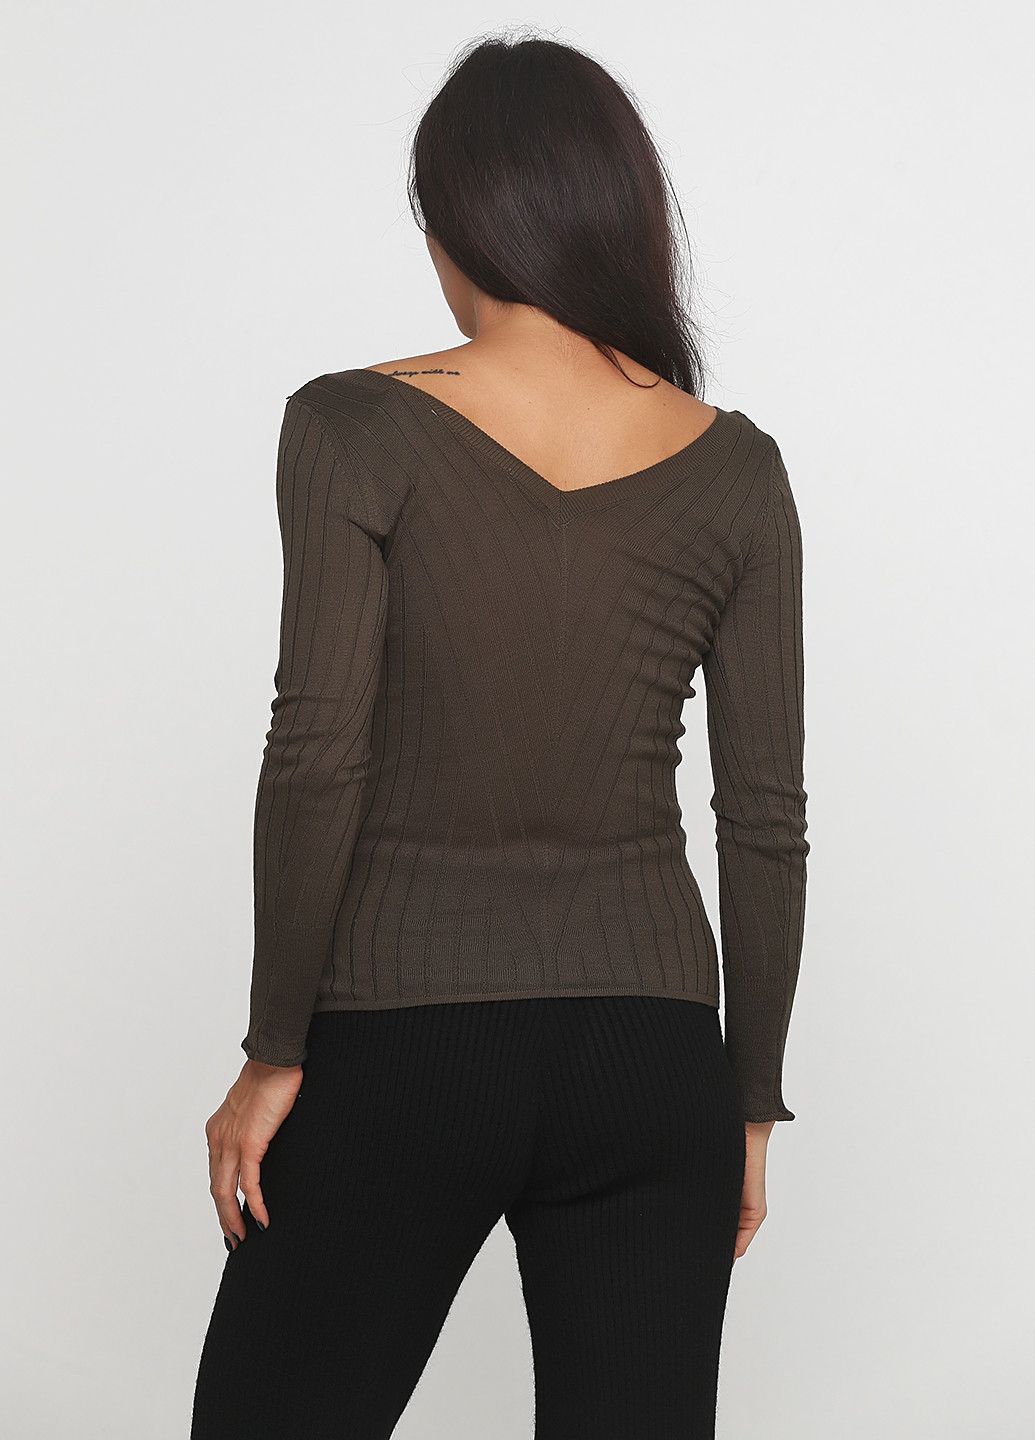 Оливковый (хаки) демисезонный пуловер пуловер Sassofono